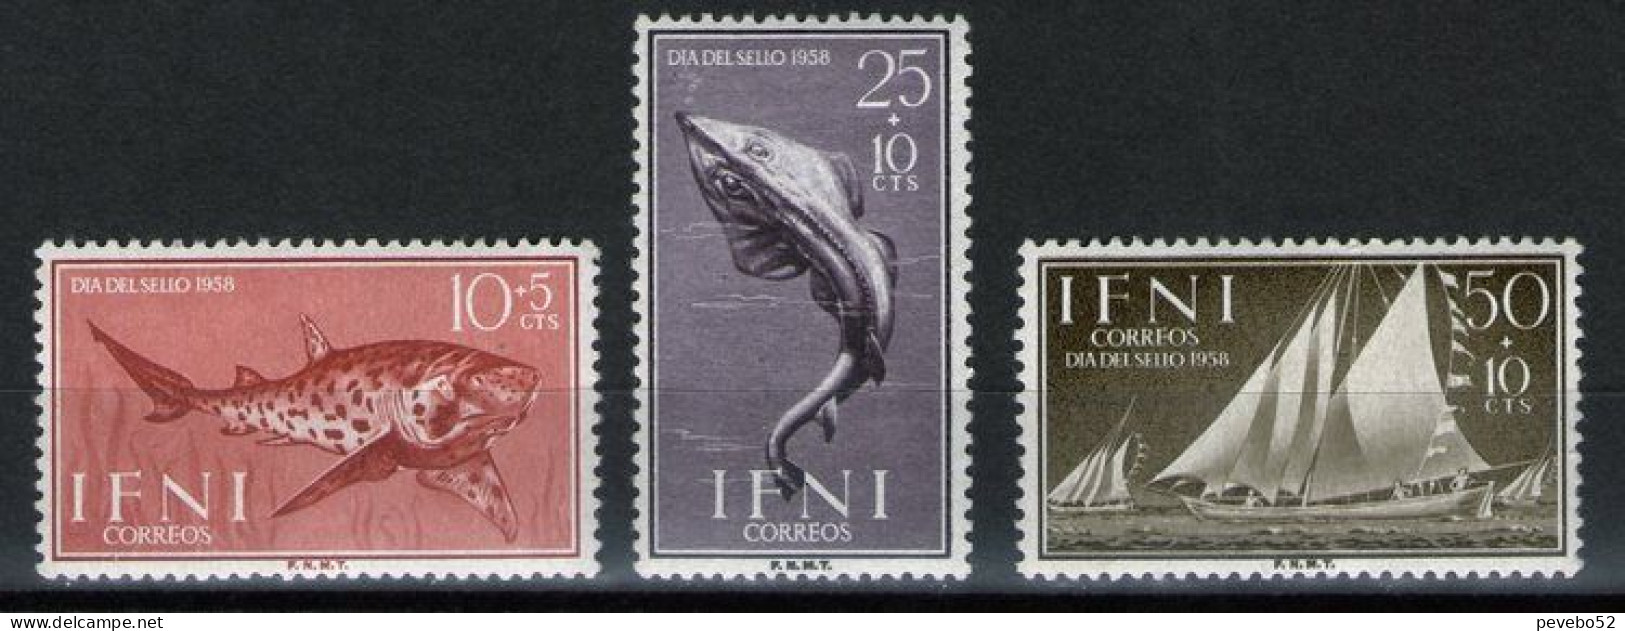 SPAINISH IFNI 1958 - Stamp Day - Fish & Ships MNH - Ifni